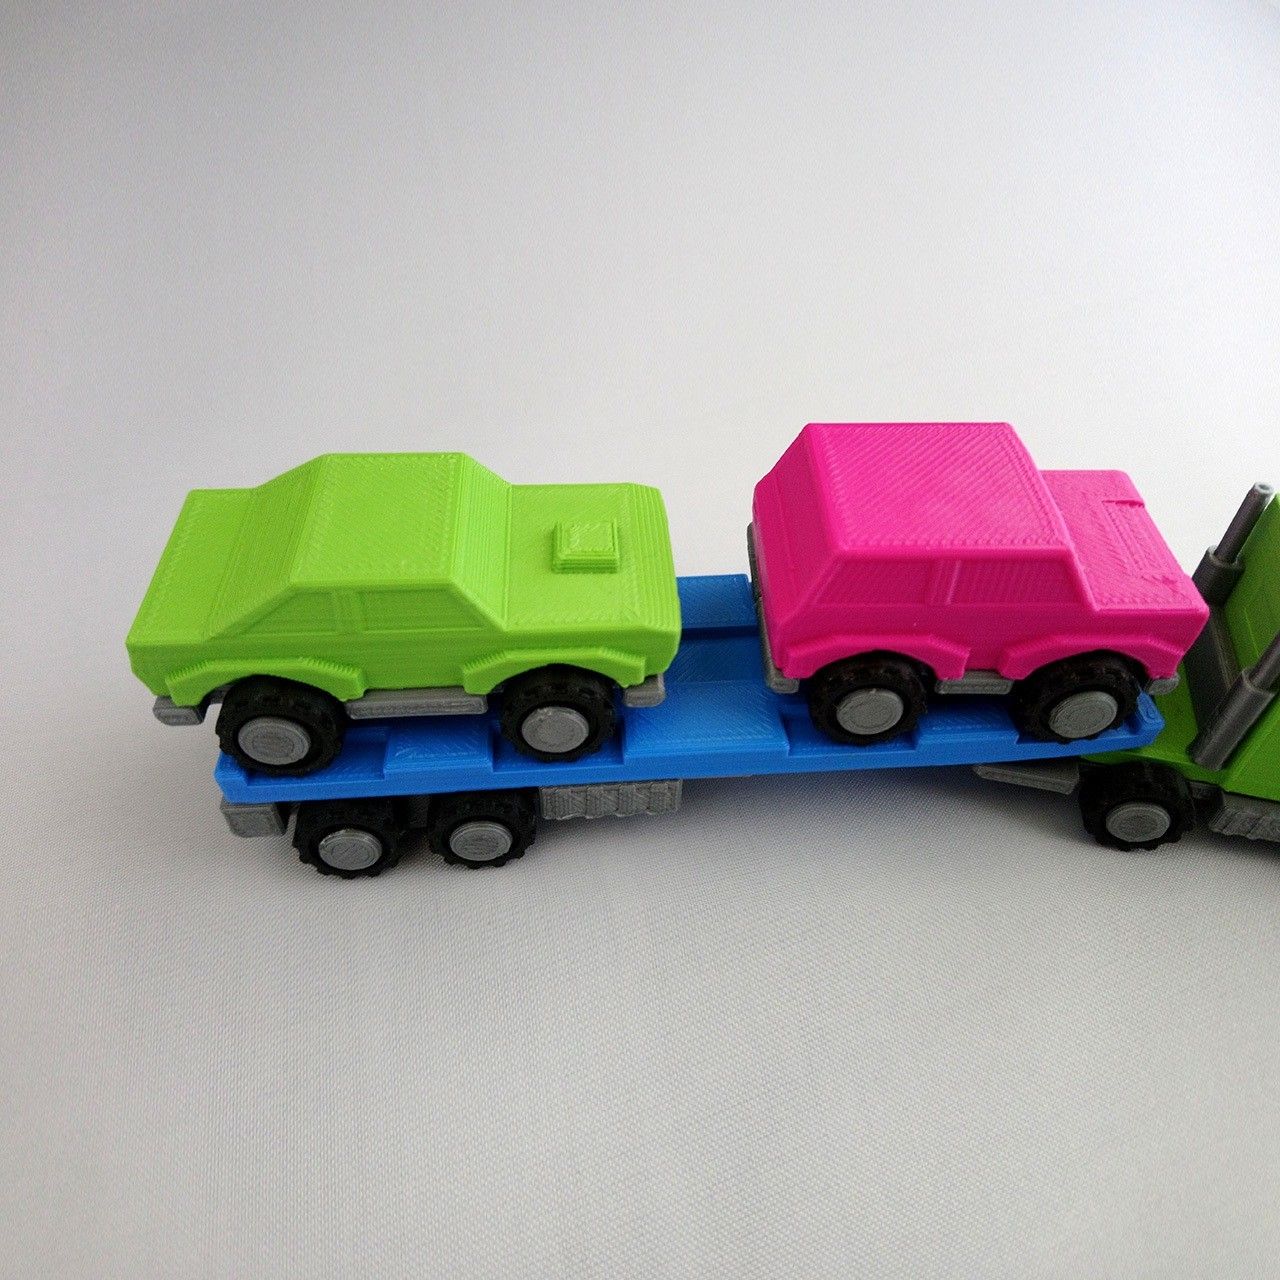 SmallToys-EuropeanTruck05.jpg Download STL file SmallToys - Trucks and trailers pack • 3D printing object, Olivier3DStudio